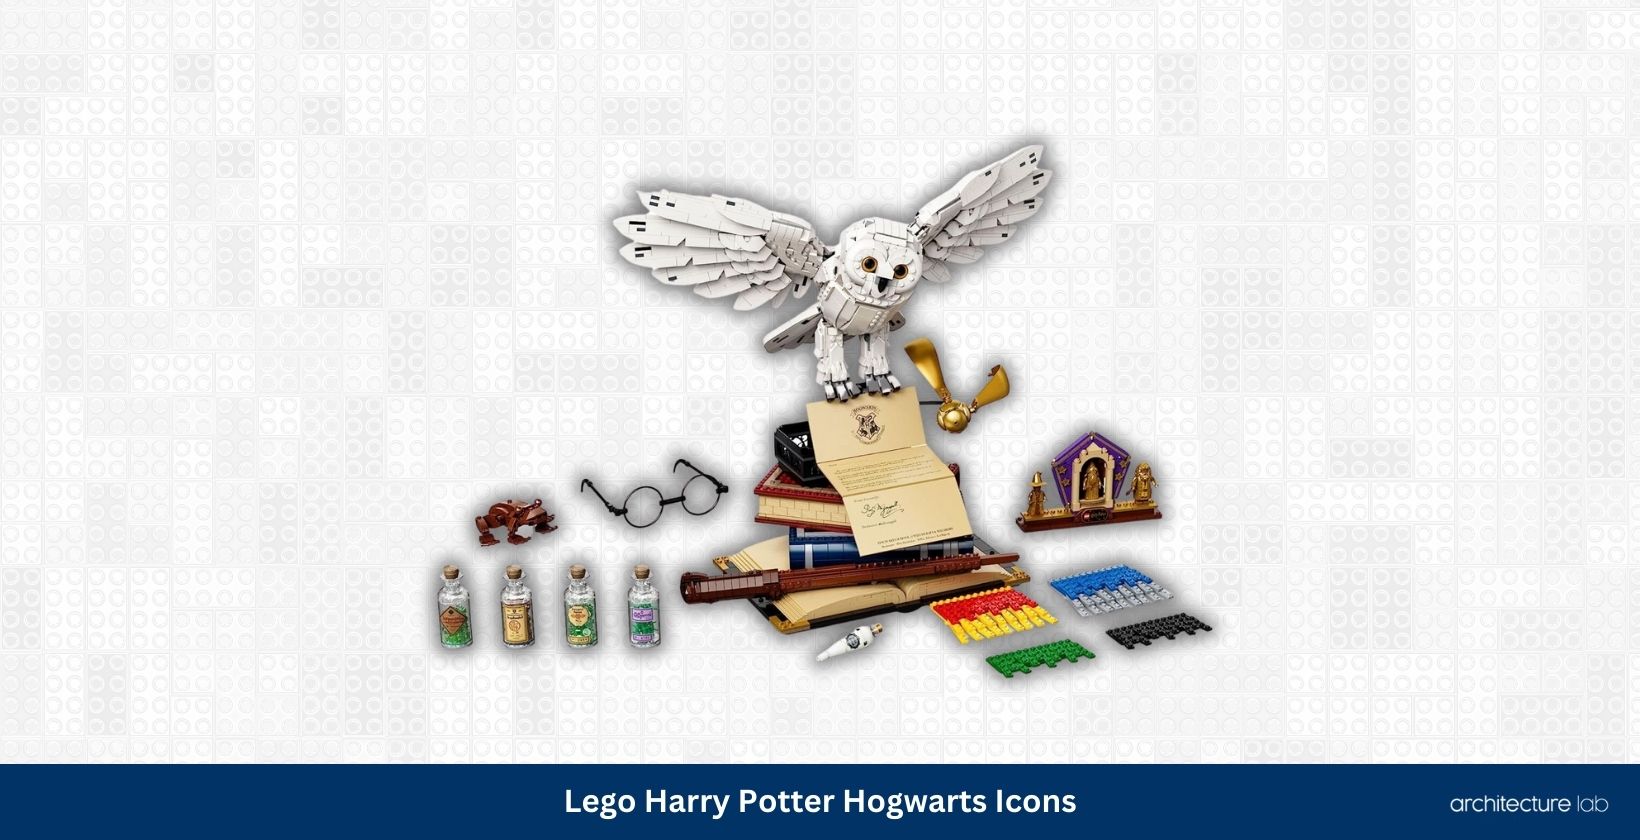 Lego harry potter hogwarts icons